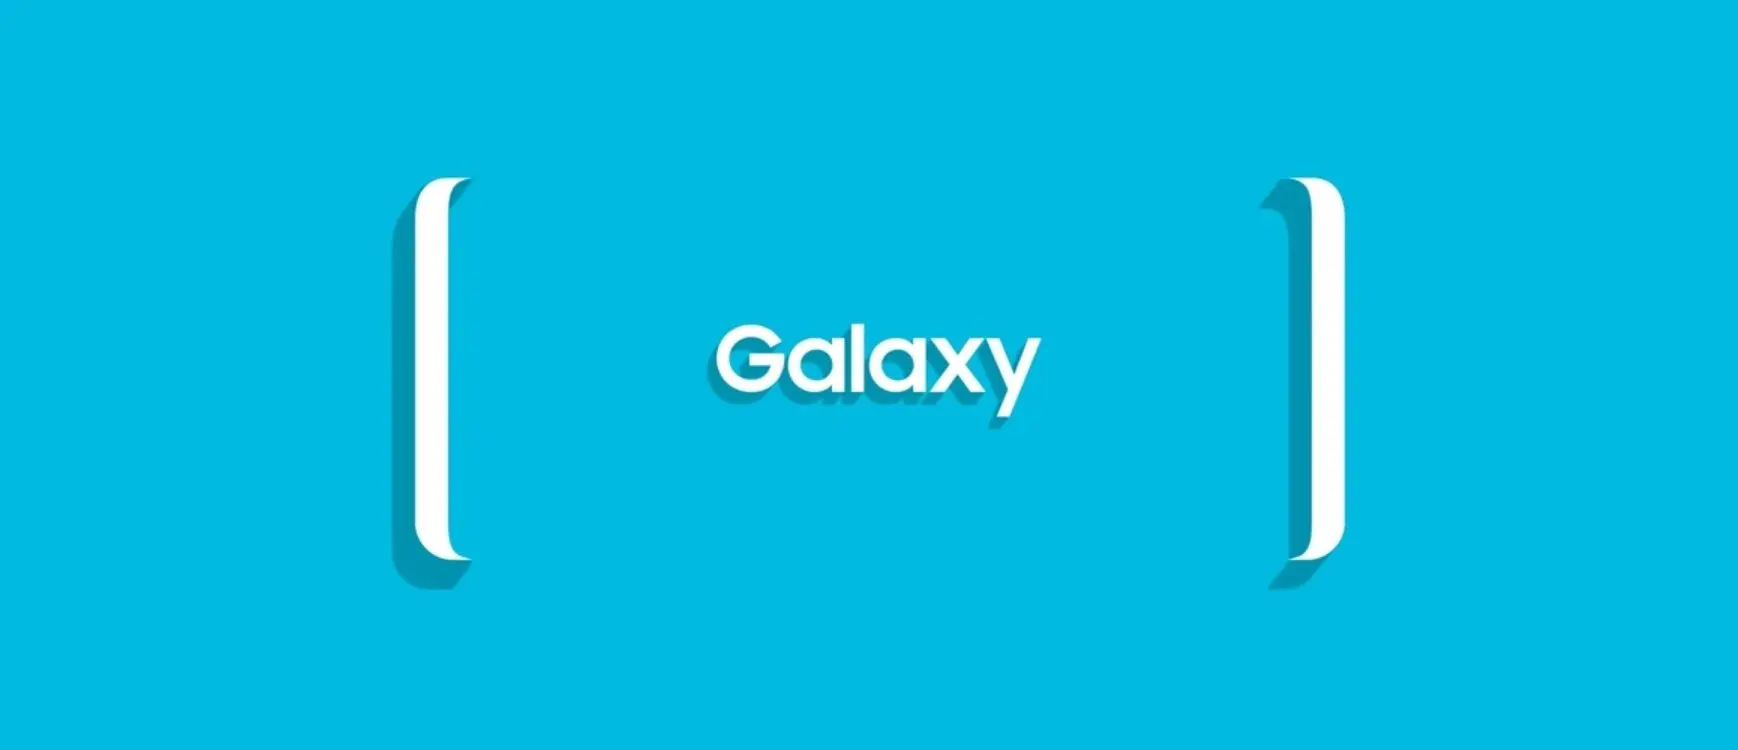 Galaxy S8 Ad